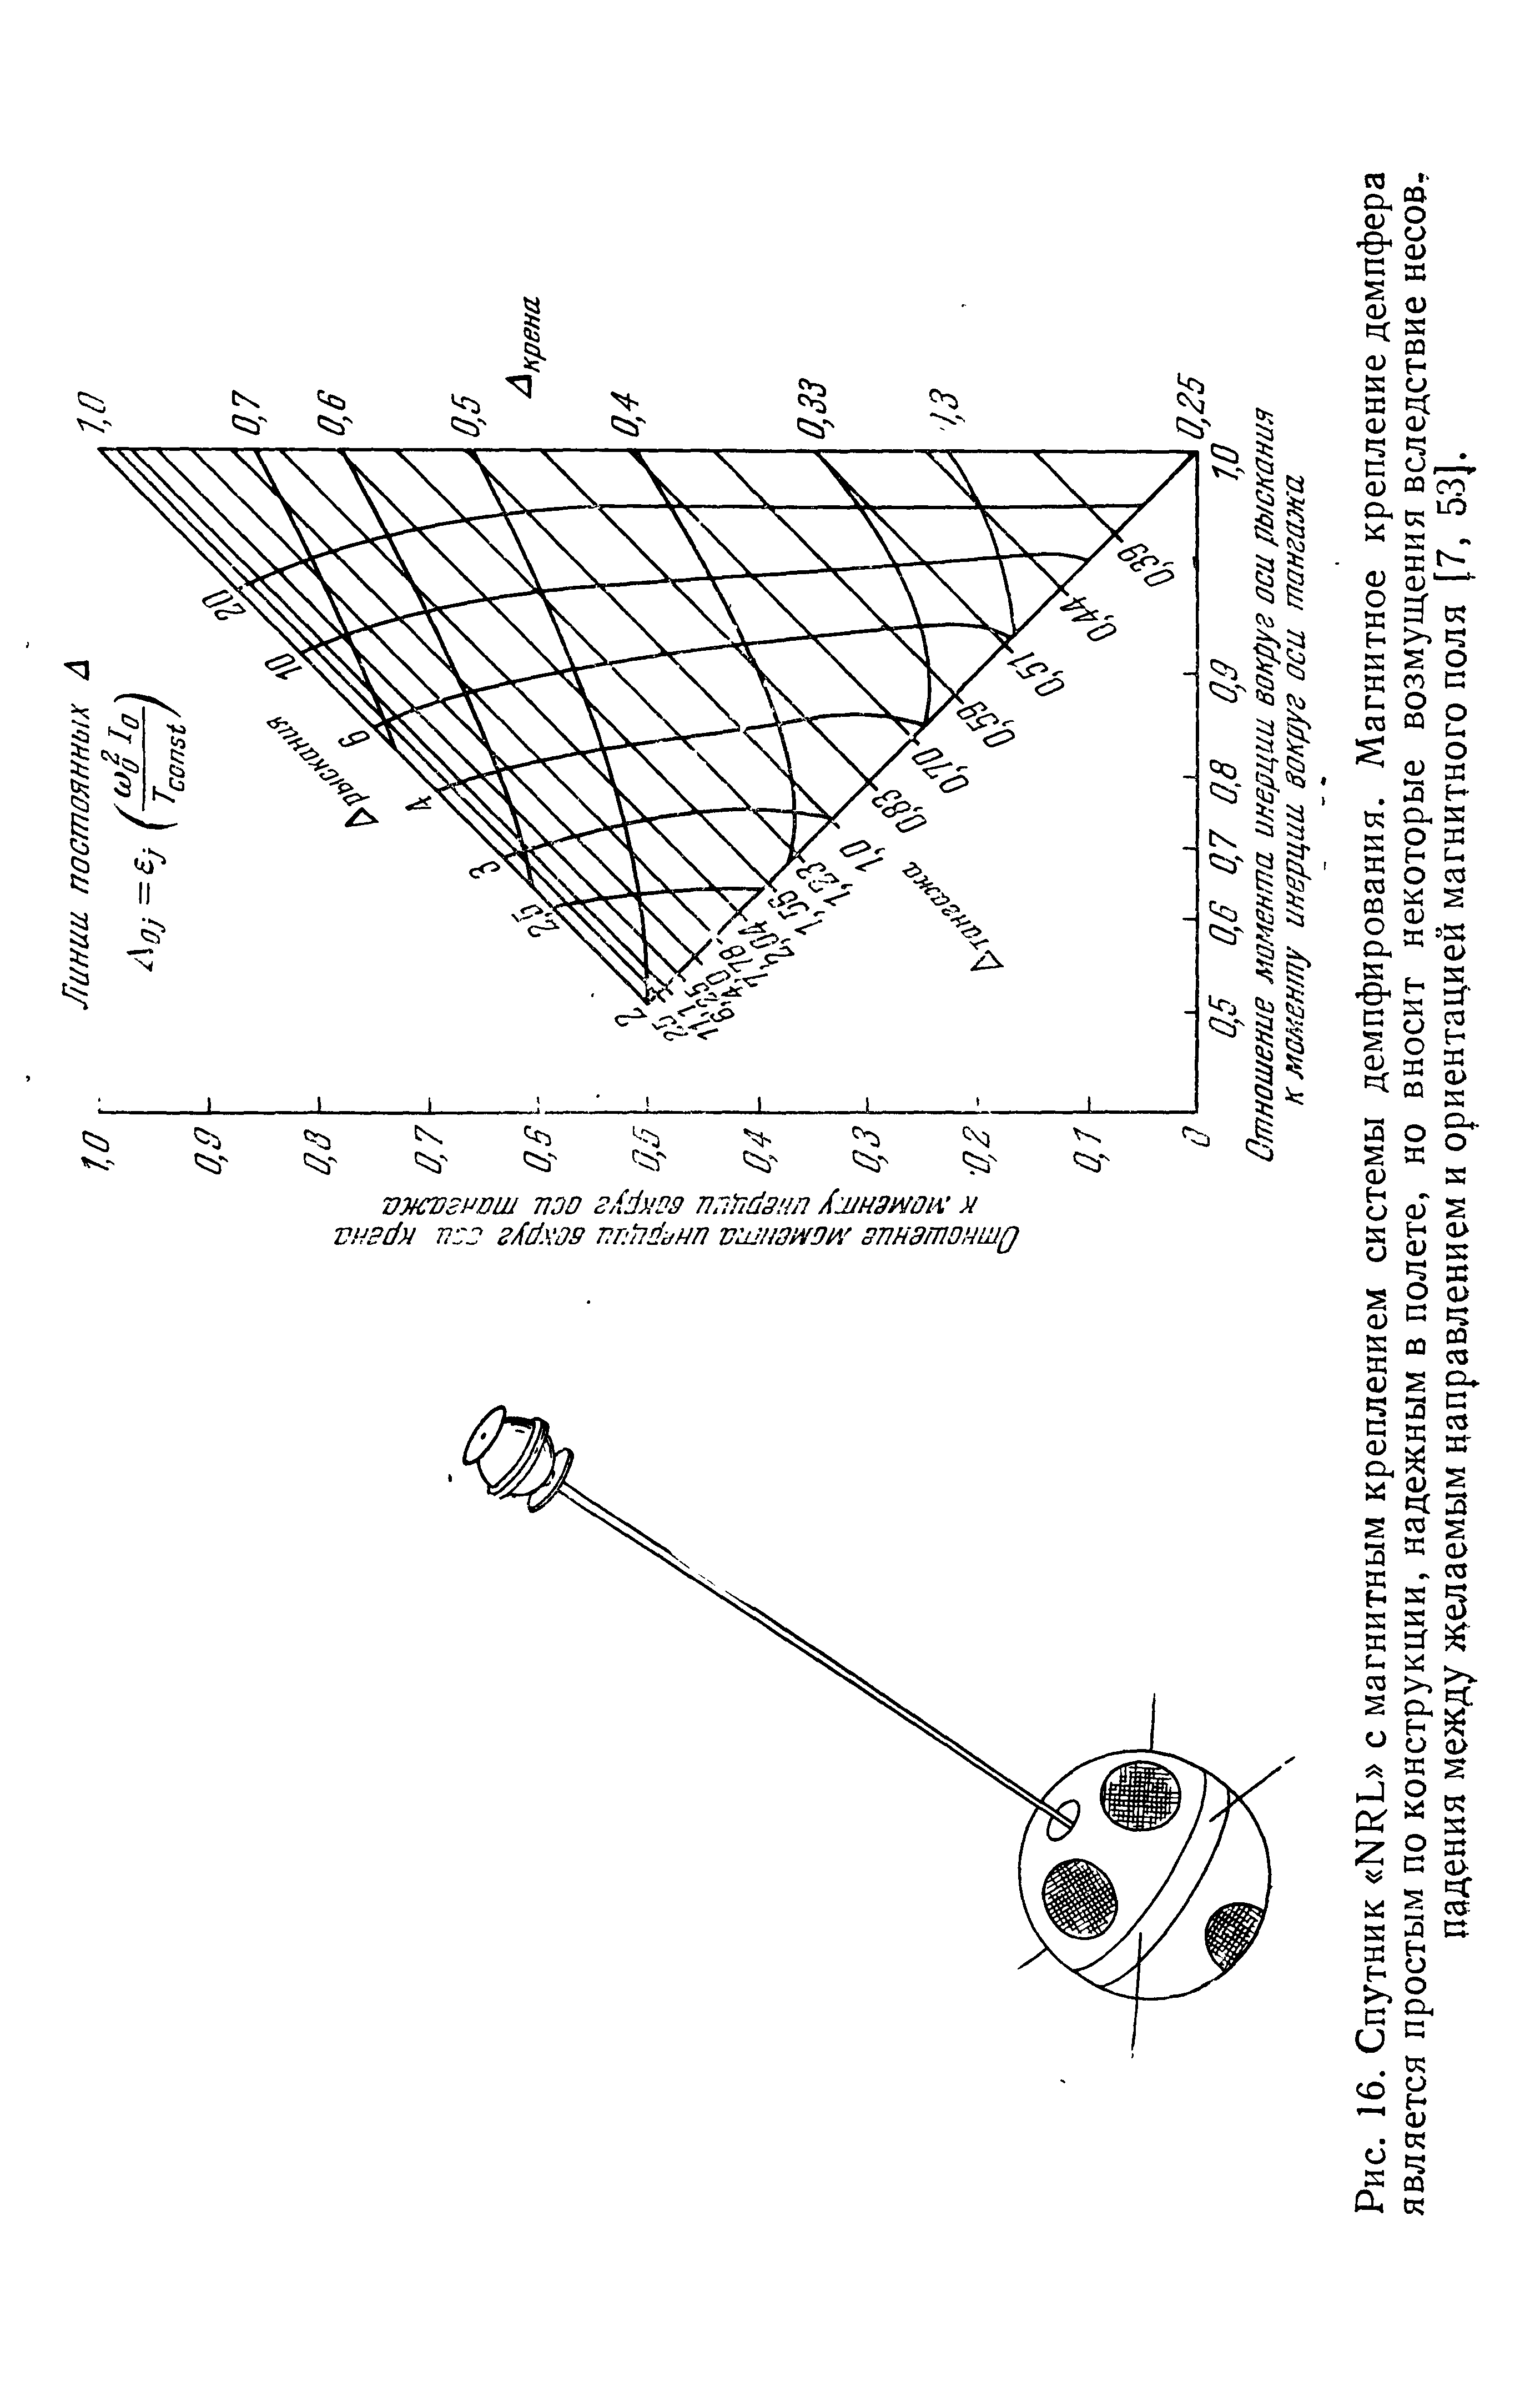 Рис. 16. Спутник NRL с магнитным креплением системы демпфирования. Магнитное крепление демпфера является простым по конструкции, надежным в полете, но вносит некоторые возмущения вследствие несовпадения между >1 елаемым направлением и ориентацией магнитного поля [7, 53].
